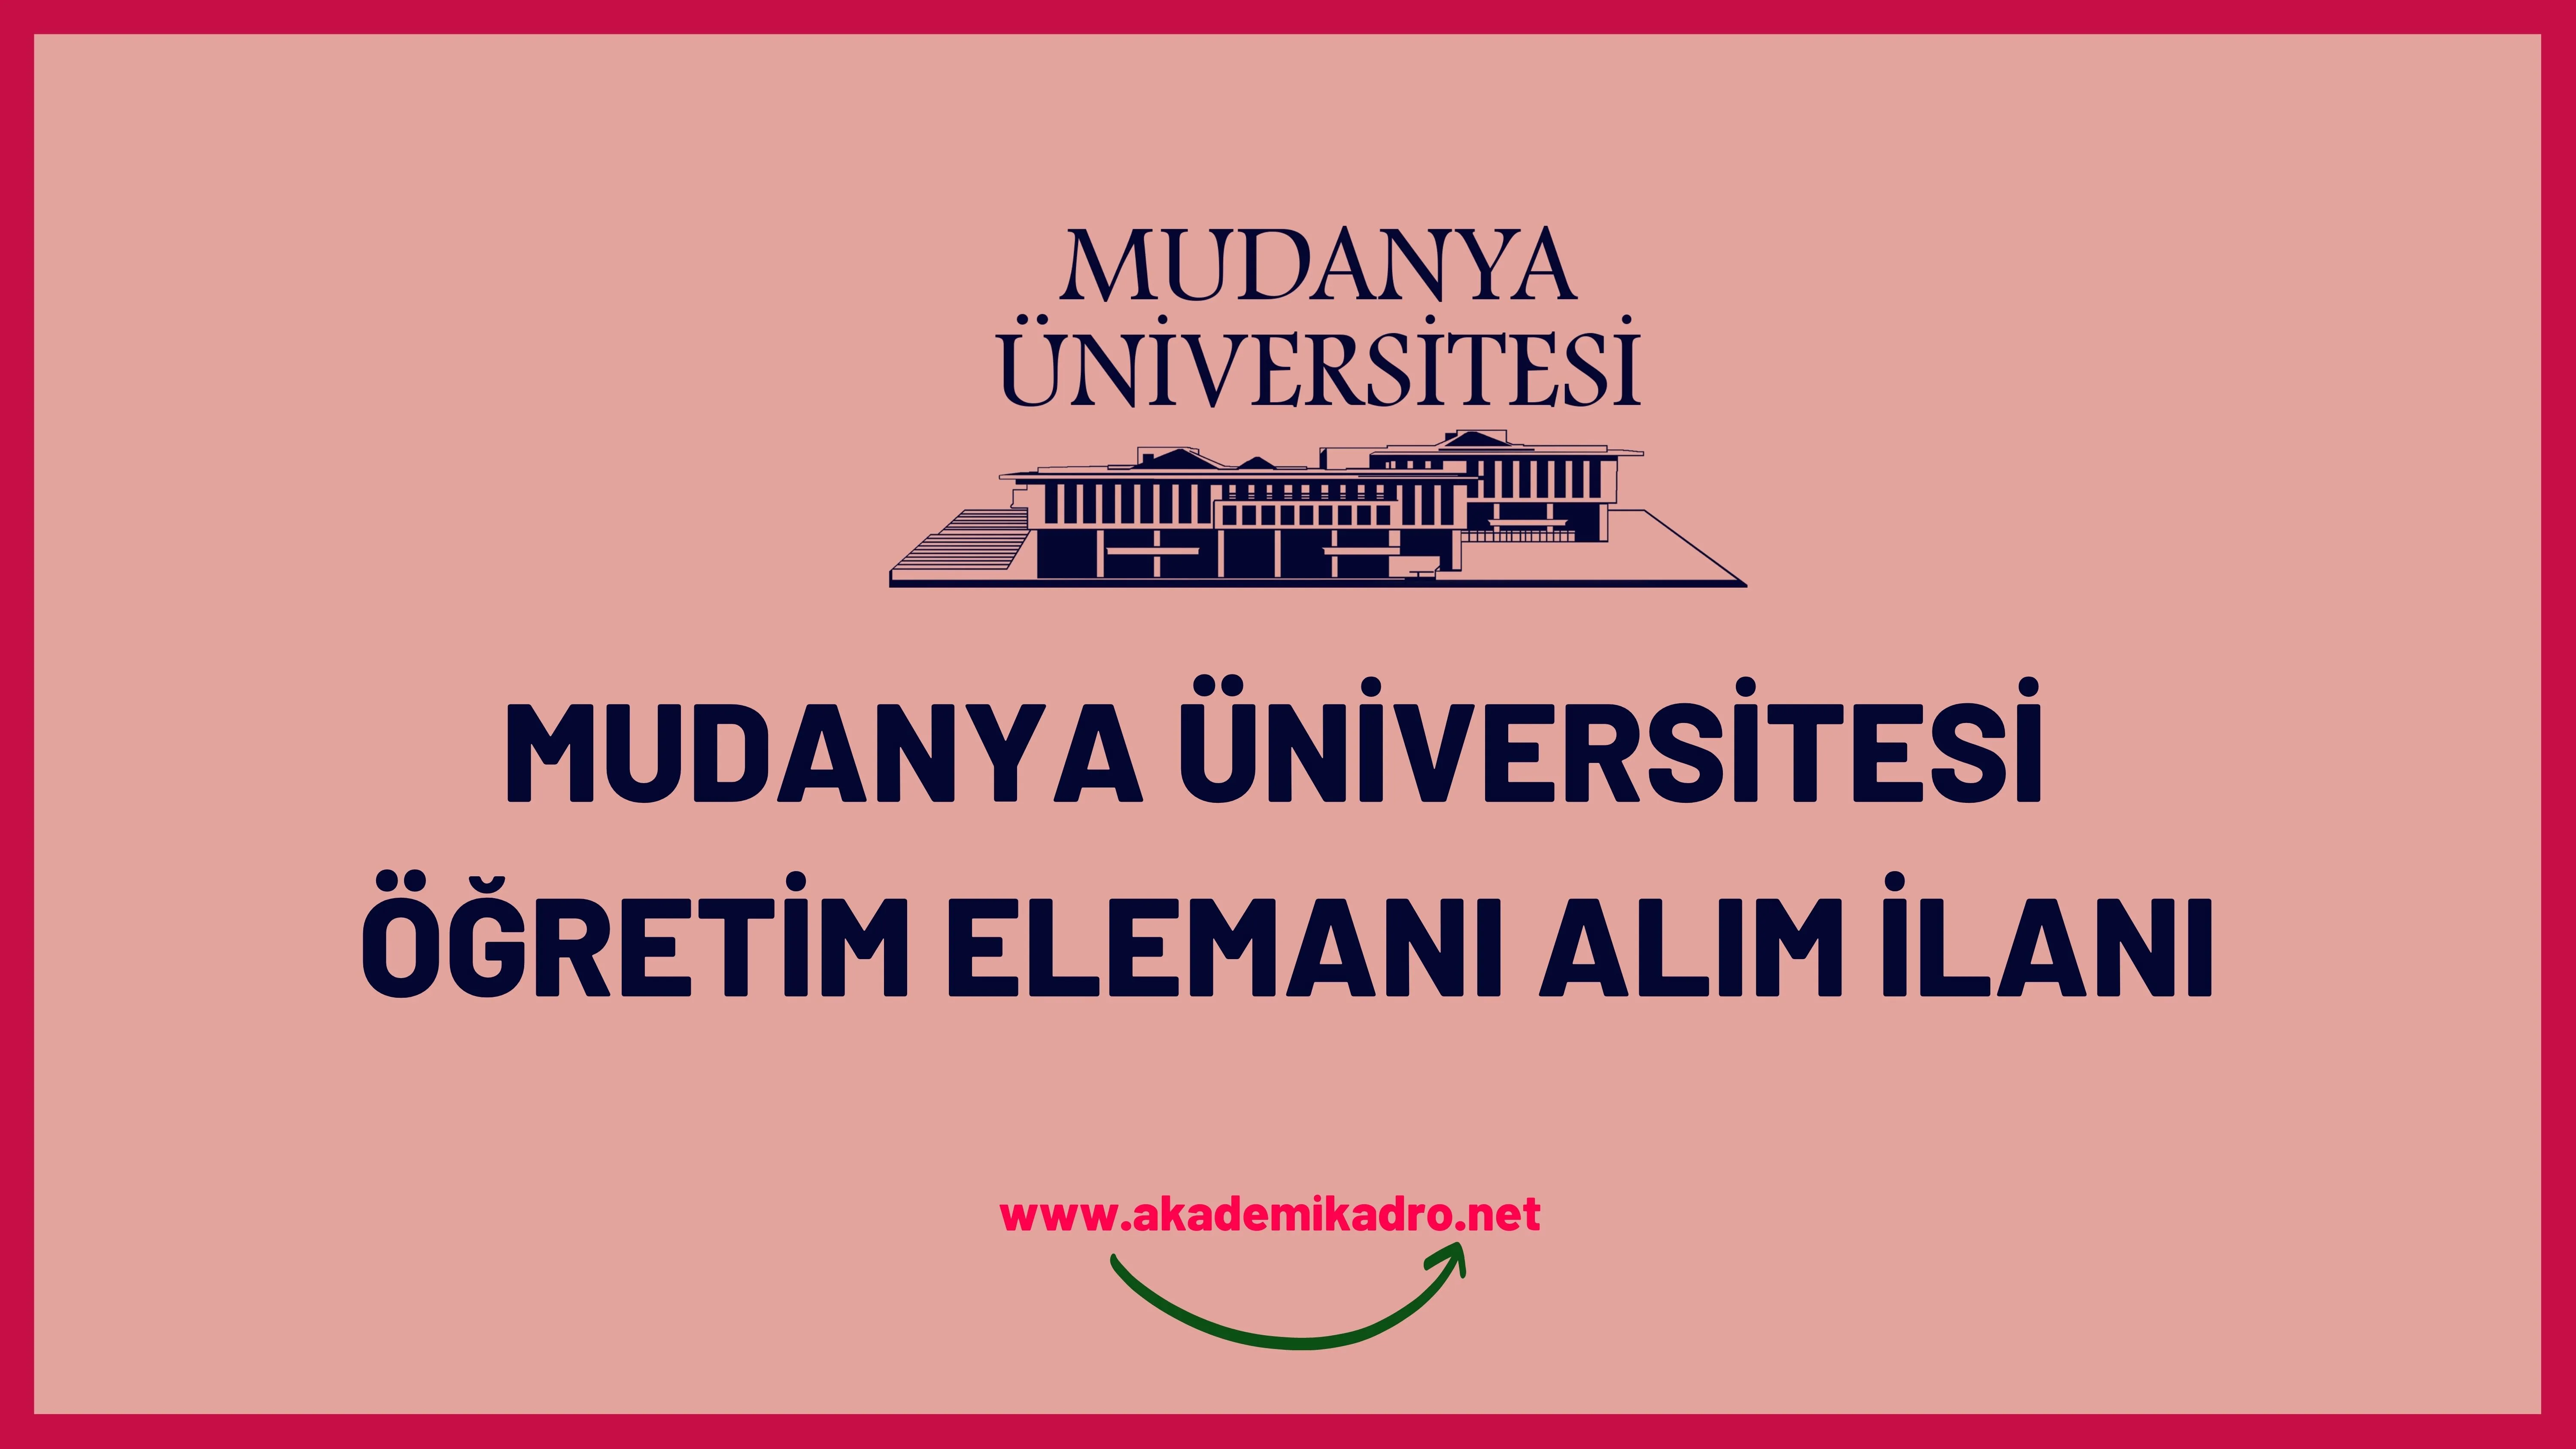 Mudanya Üniversitesi Araştırma görevlisi ve öğretim üyesi olmak üzere 12 öğretim elemanı alacak.